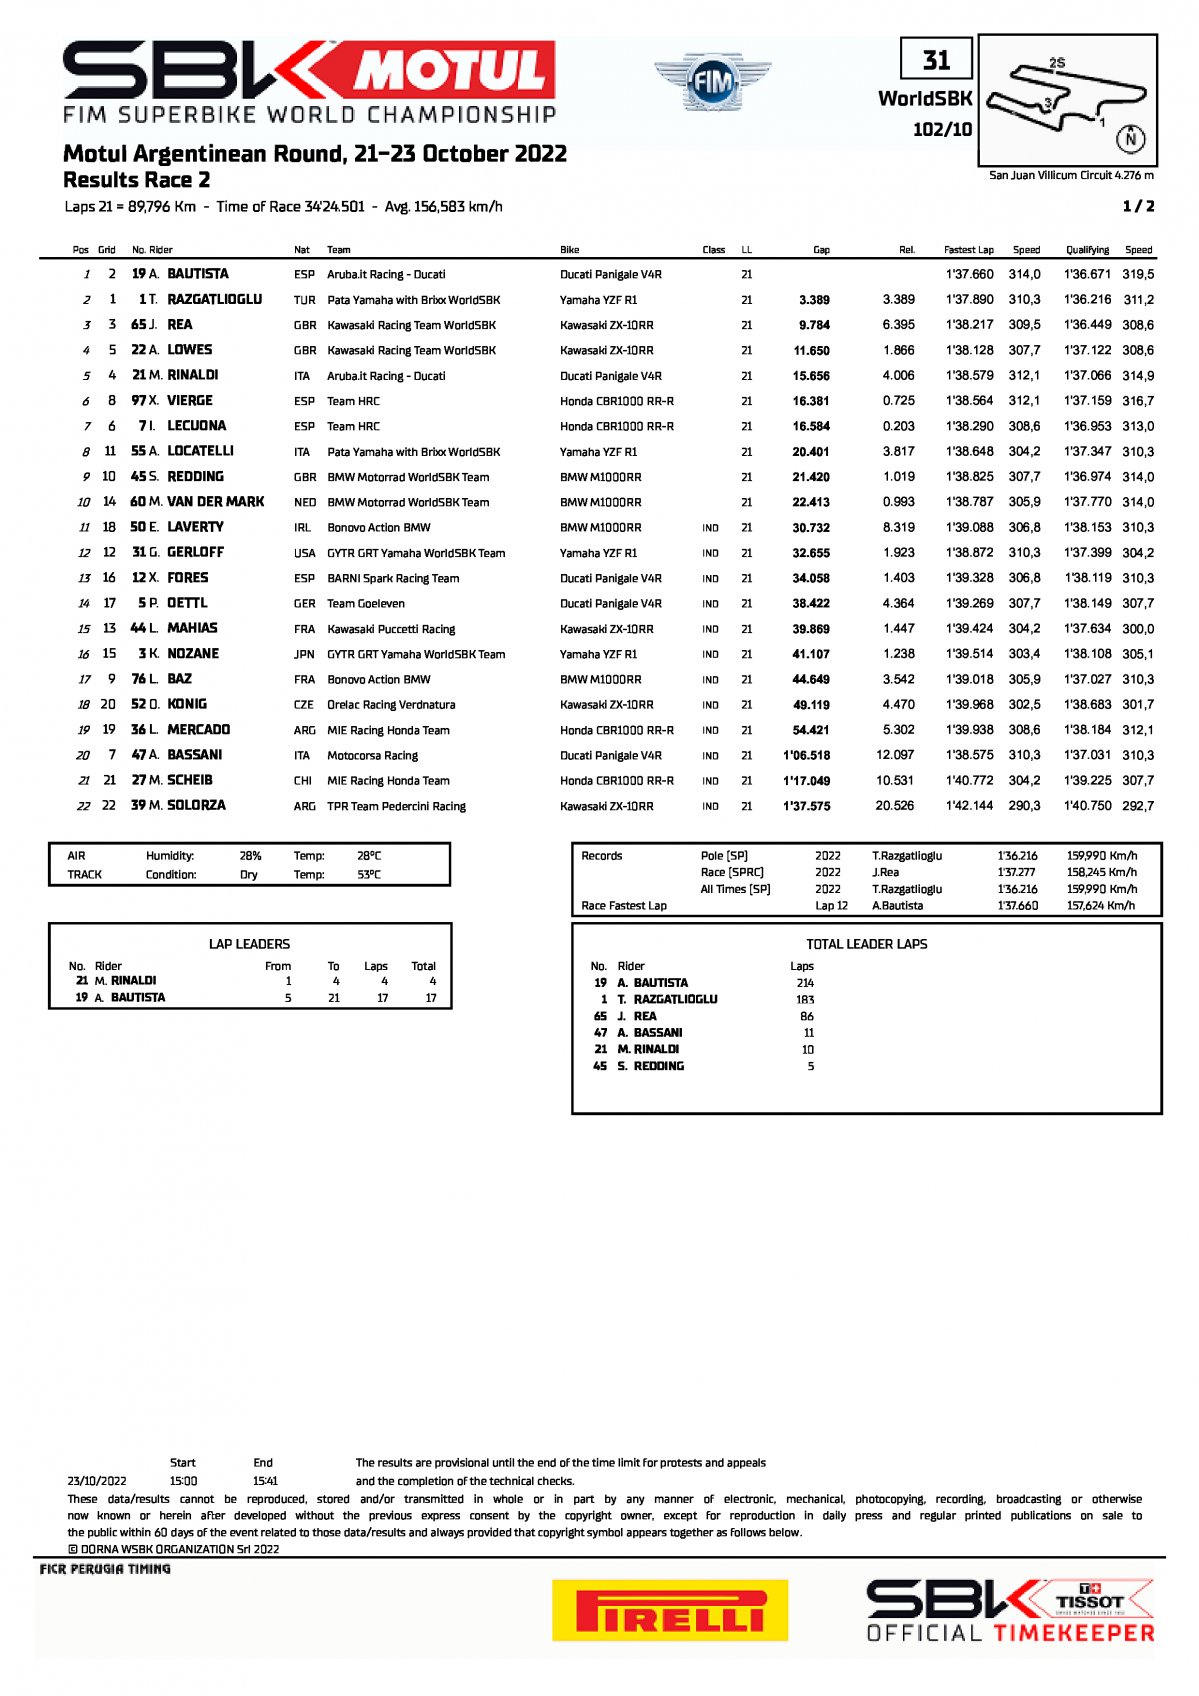 Результаты 2 гонки ARGWorldSBK, San Juan Villicum (23/10/2022)